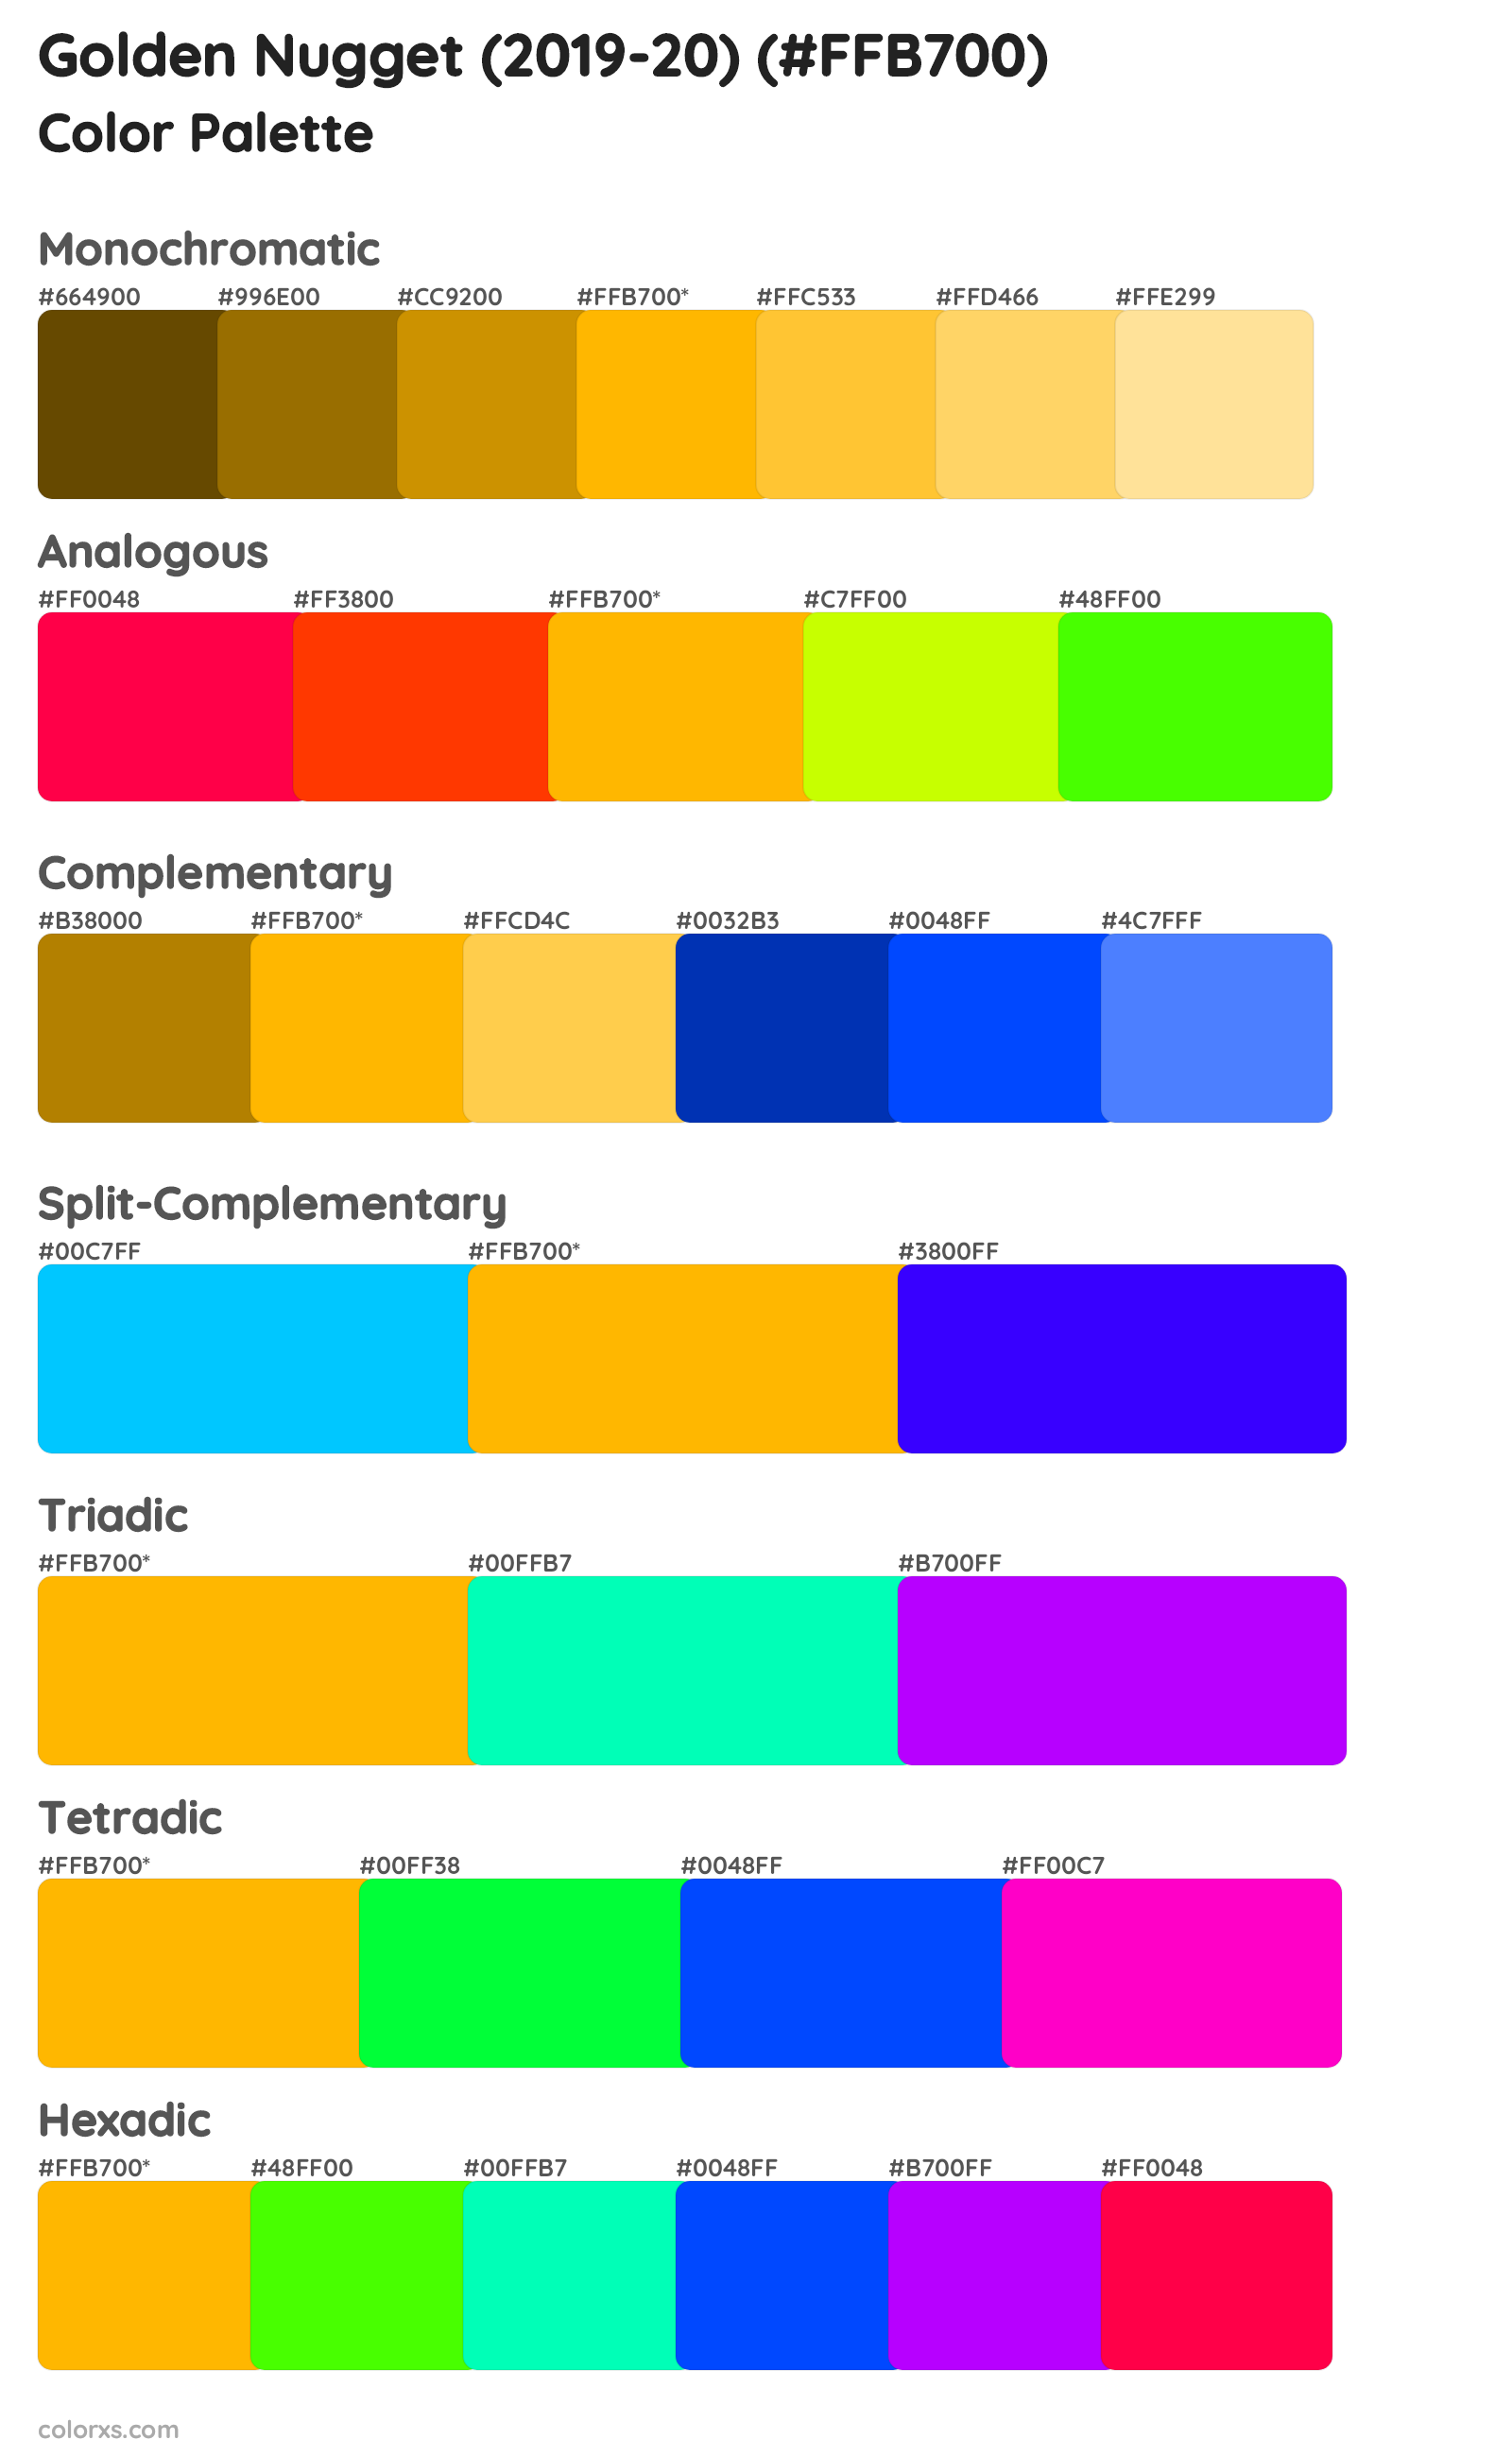 Golden Nugget (2019-20) Color Scheme Palettes